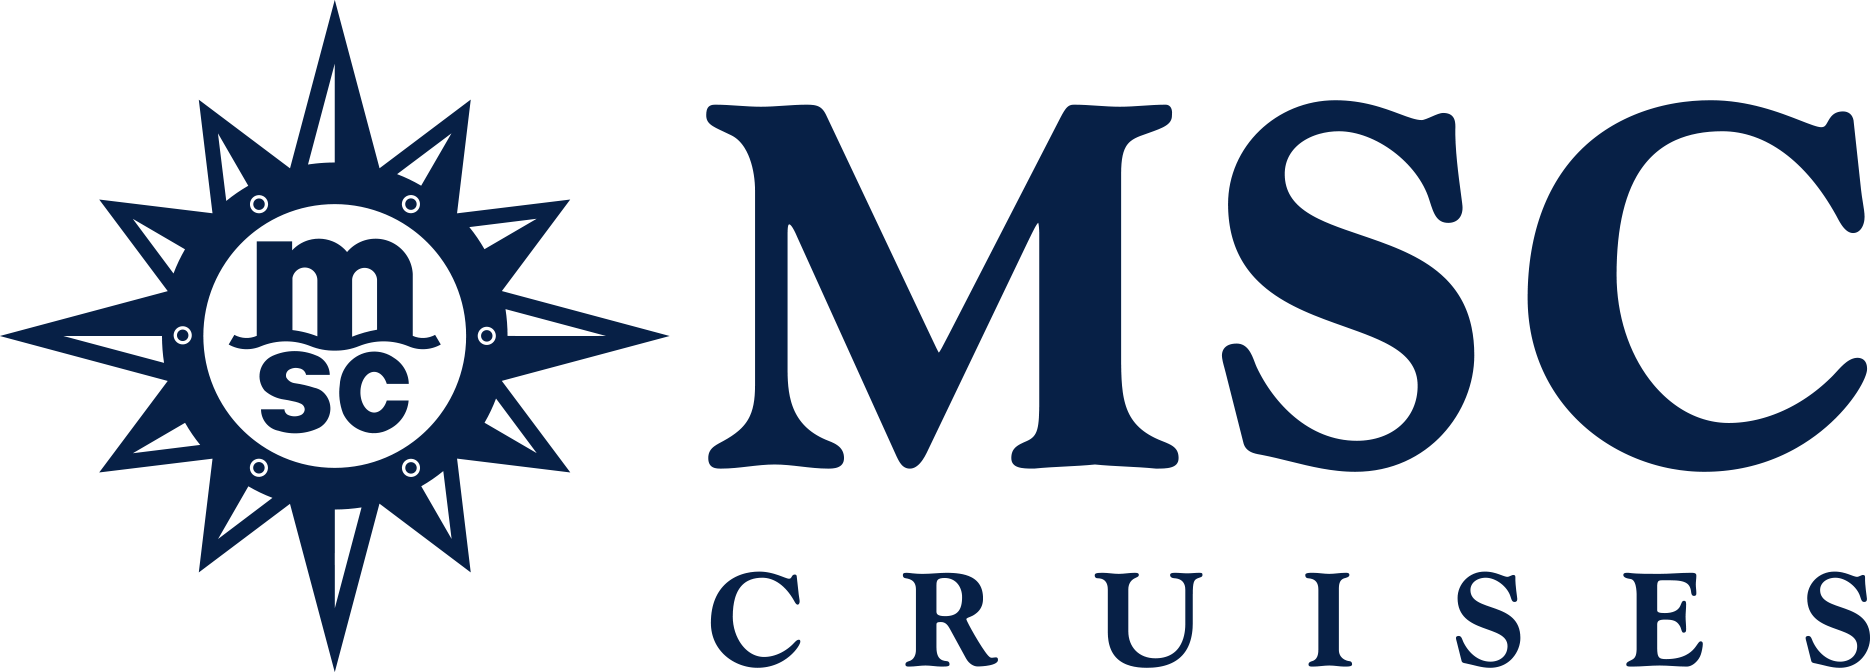 MSC Seaview Reederei Logo